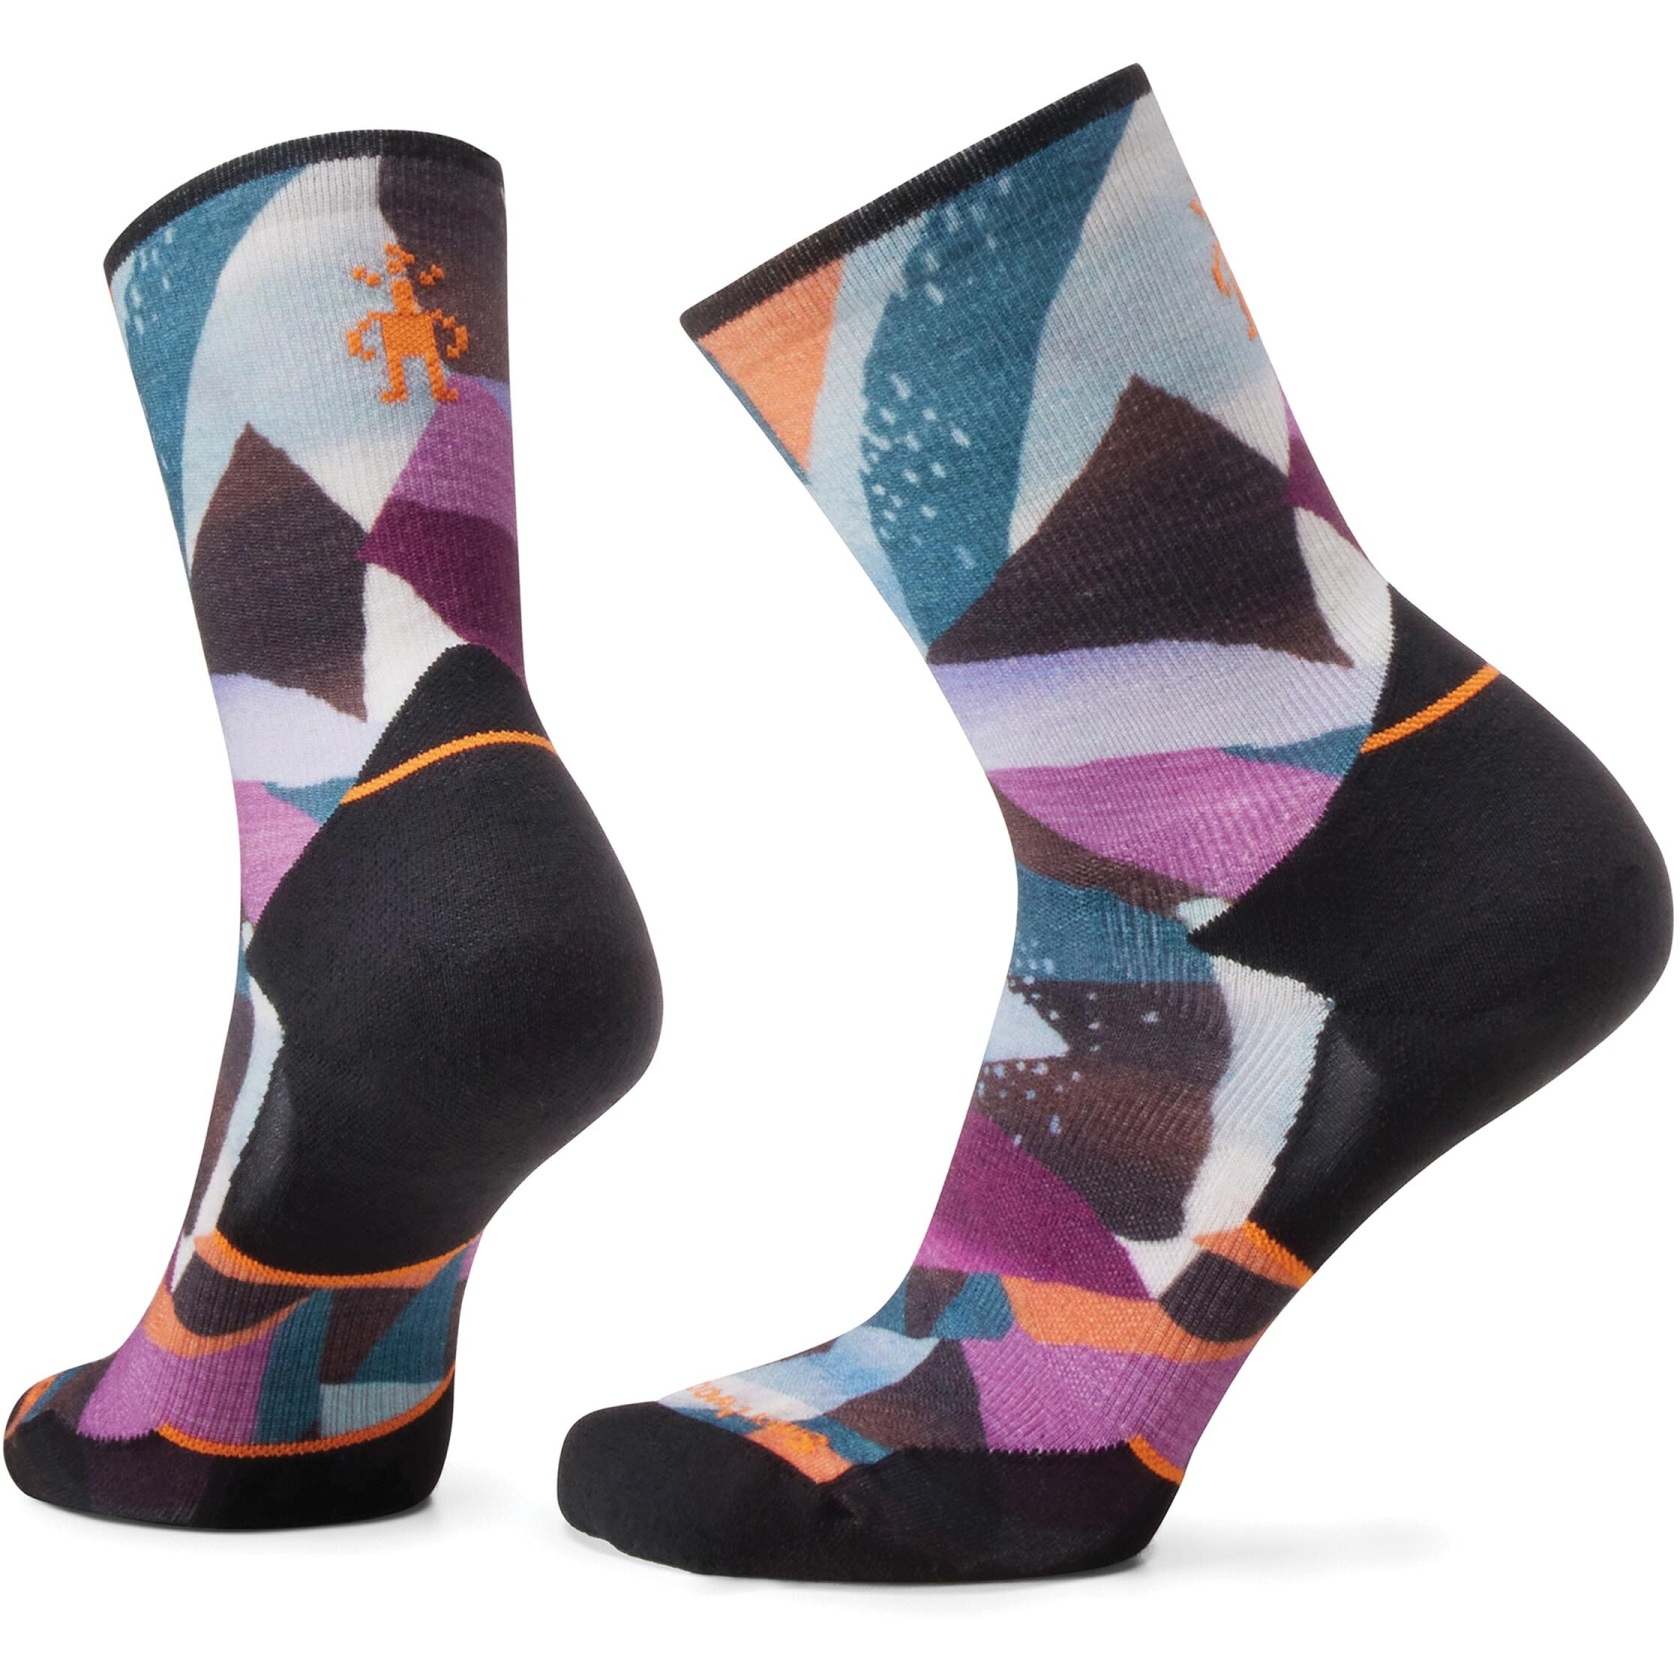 Produktbild von SmartWool Targeted Cushion Mosaic Pieces Print Crew Trailrunning Socken Damen - 001 schwarz